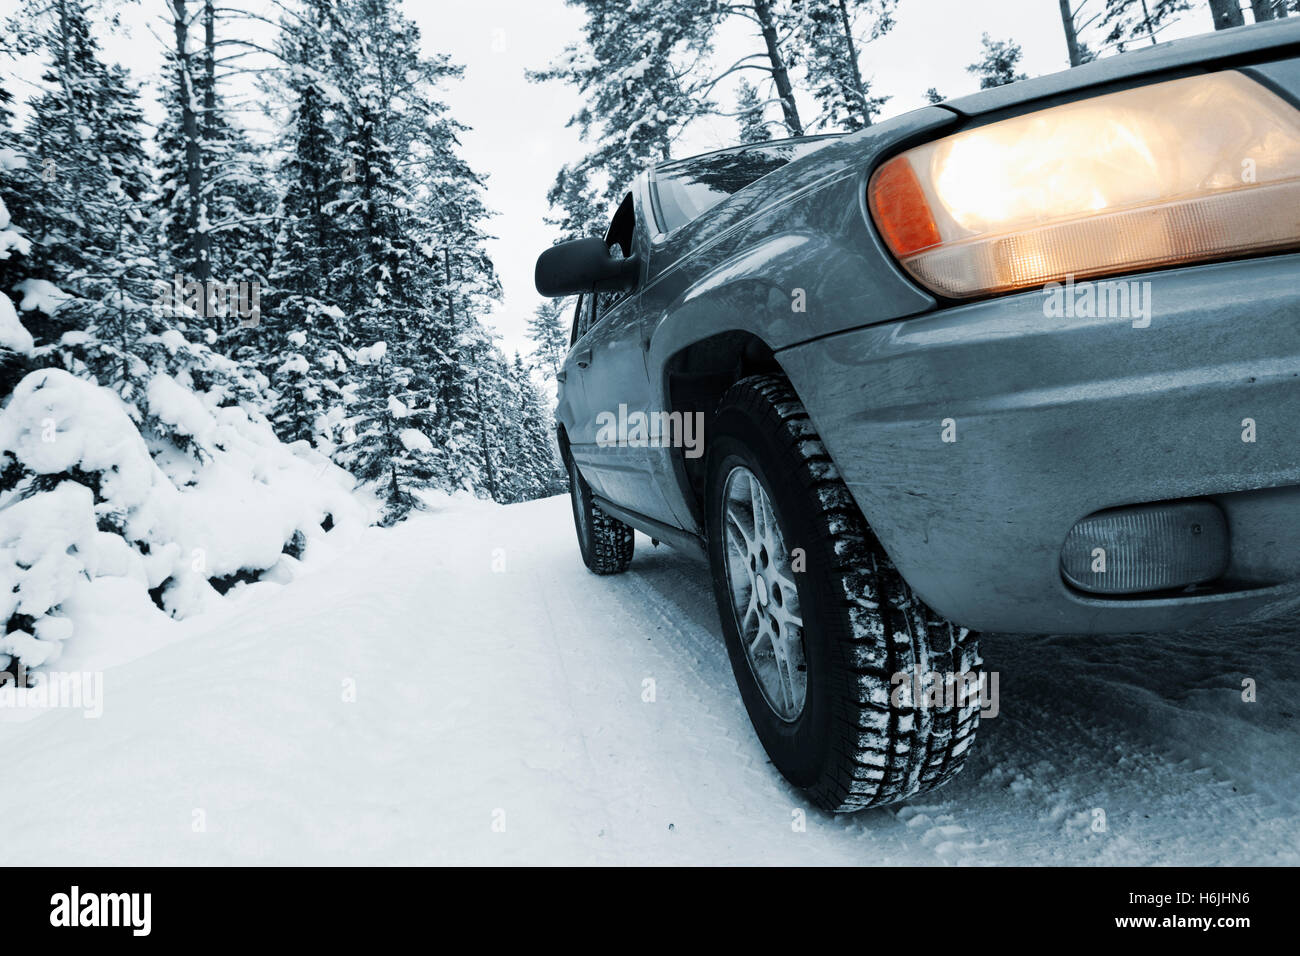 4x4, car guida in presenza di neve e di condizioni difficili Foto Stock